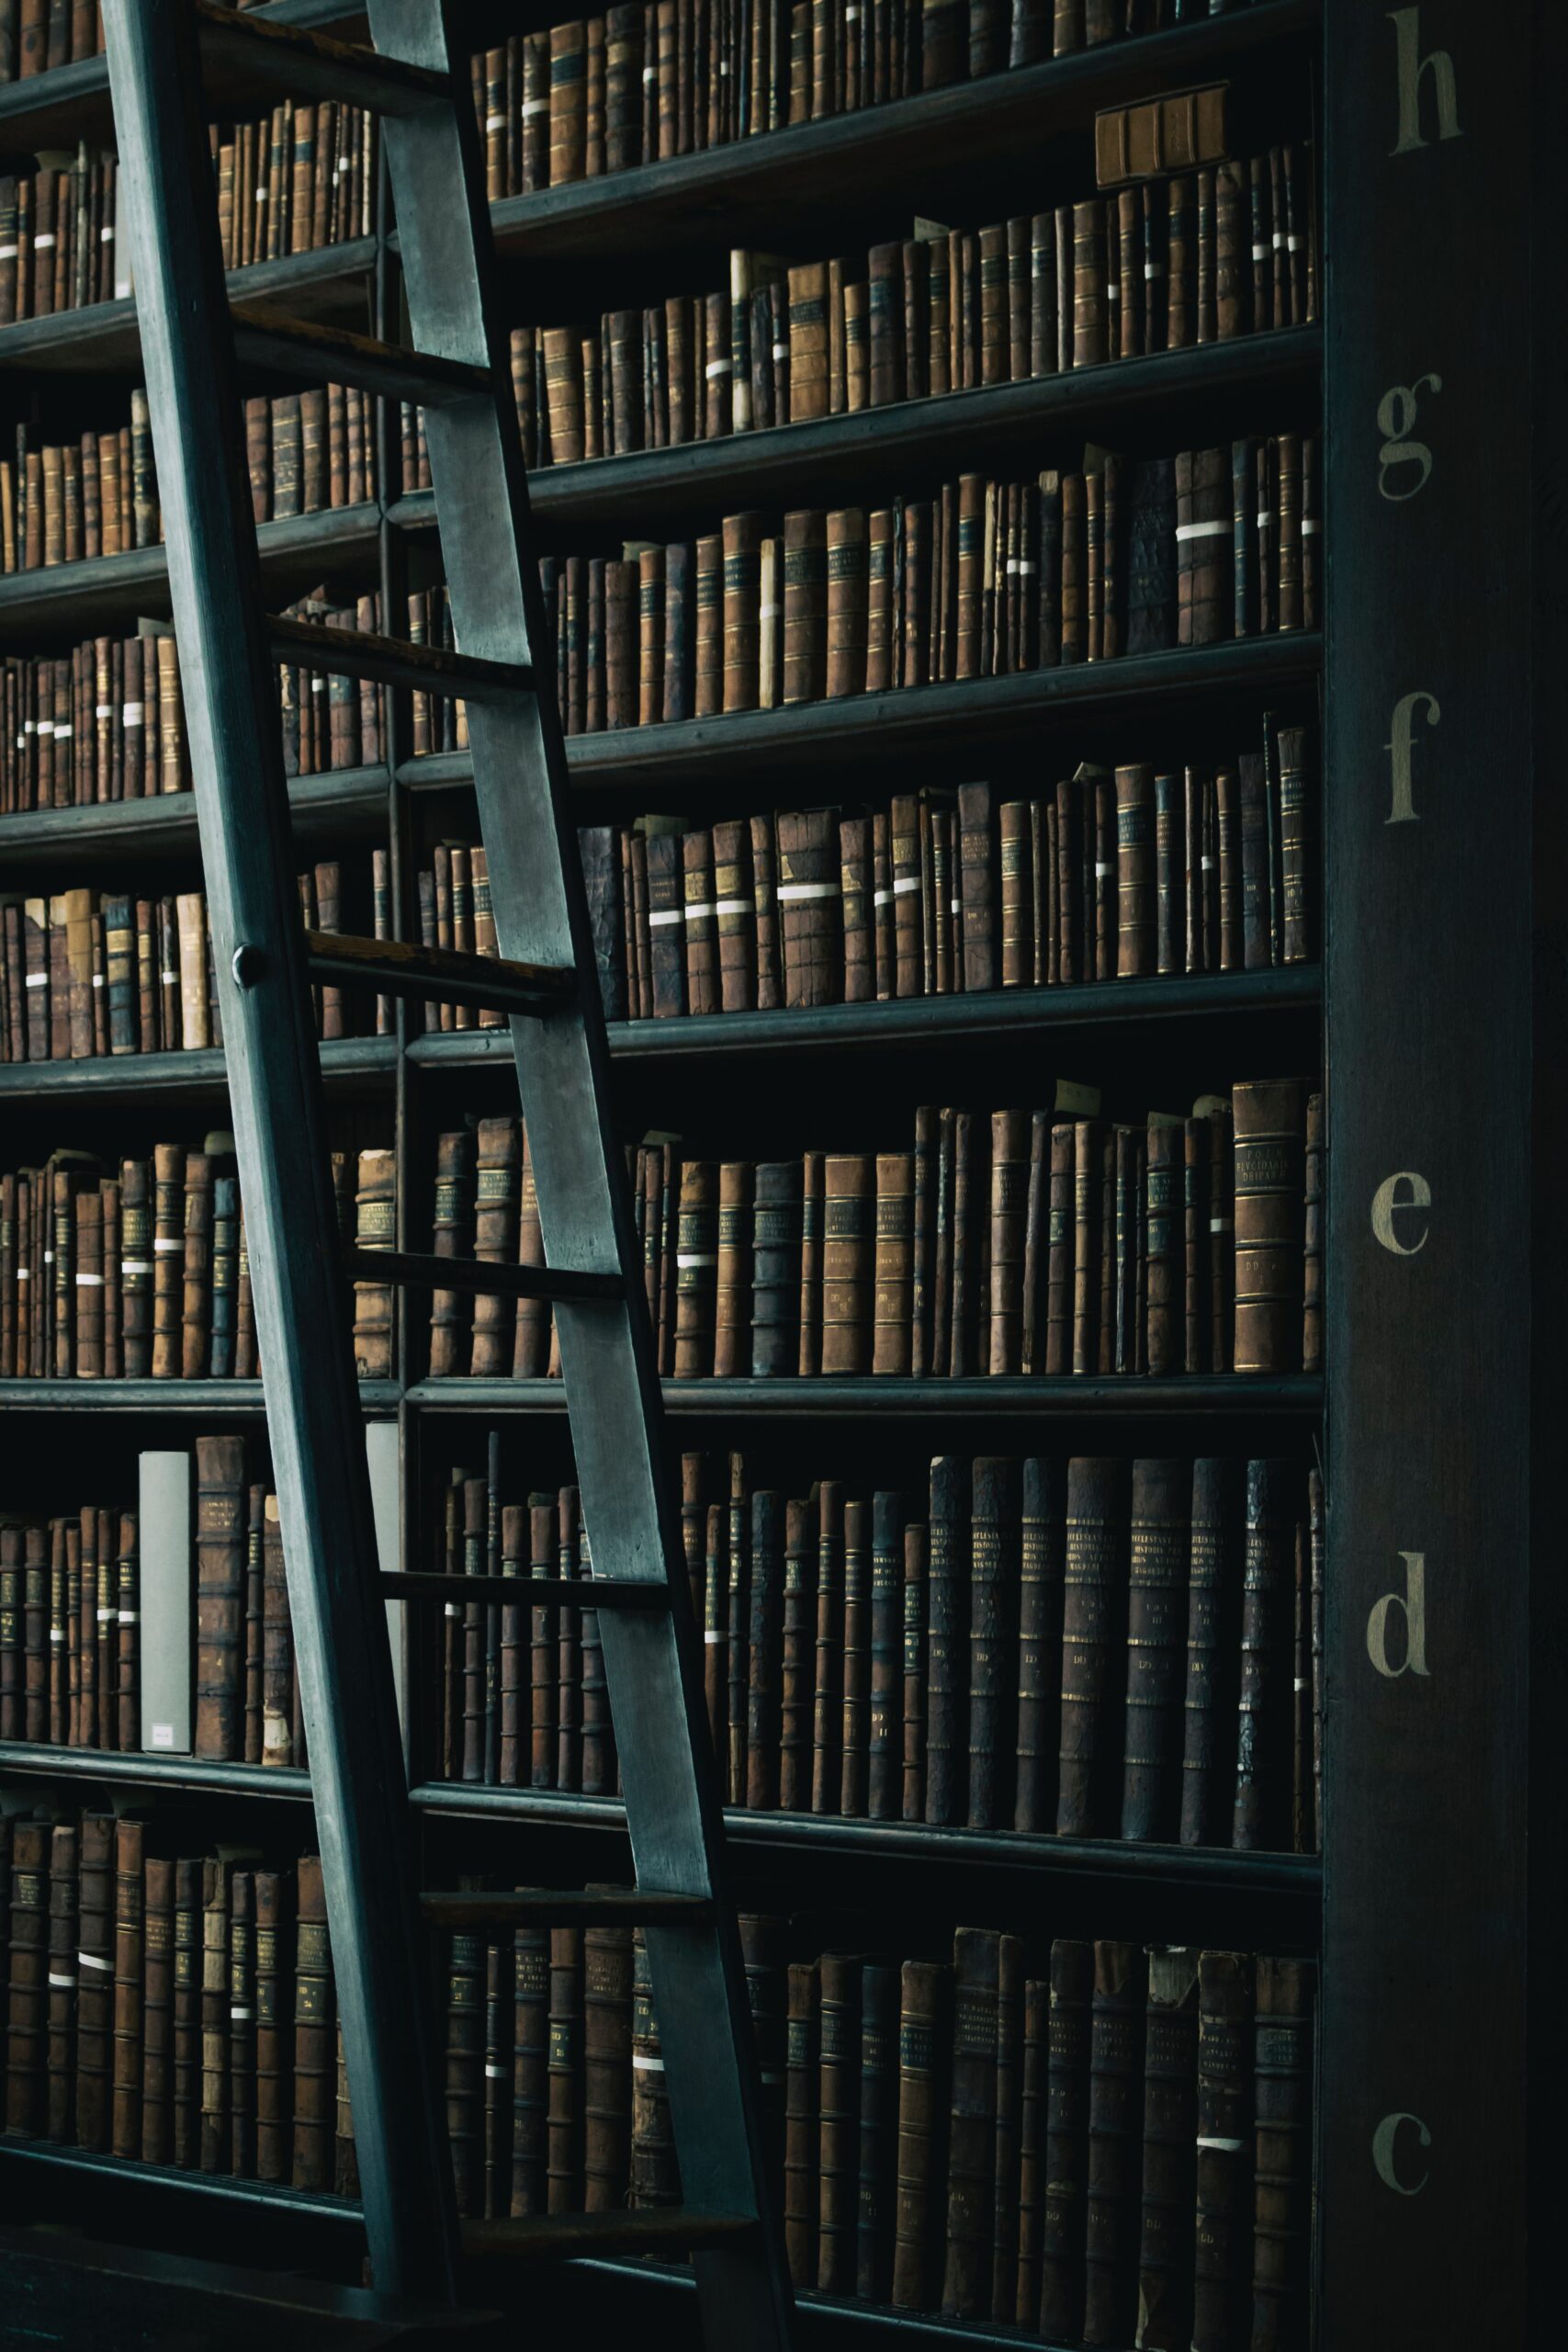 Dark bookshelf with ladder